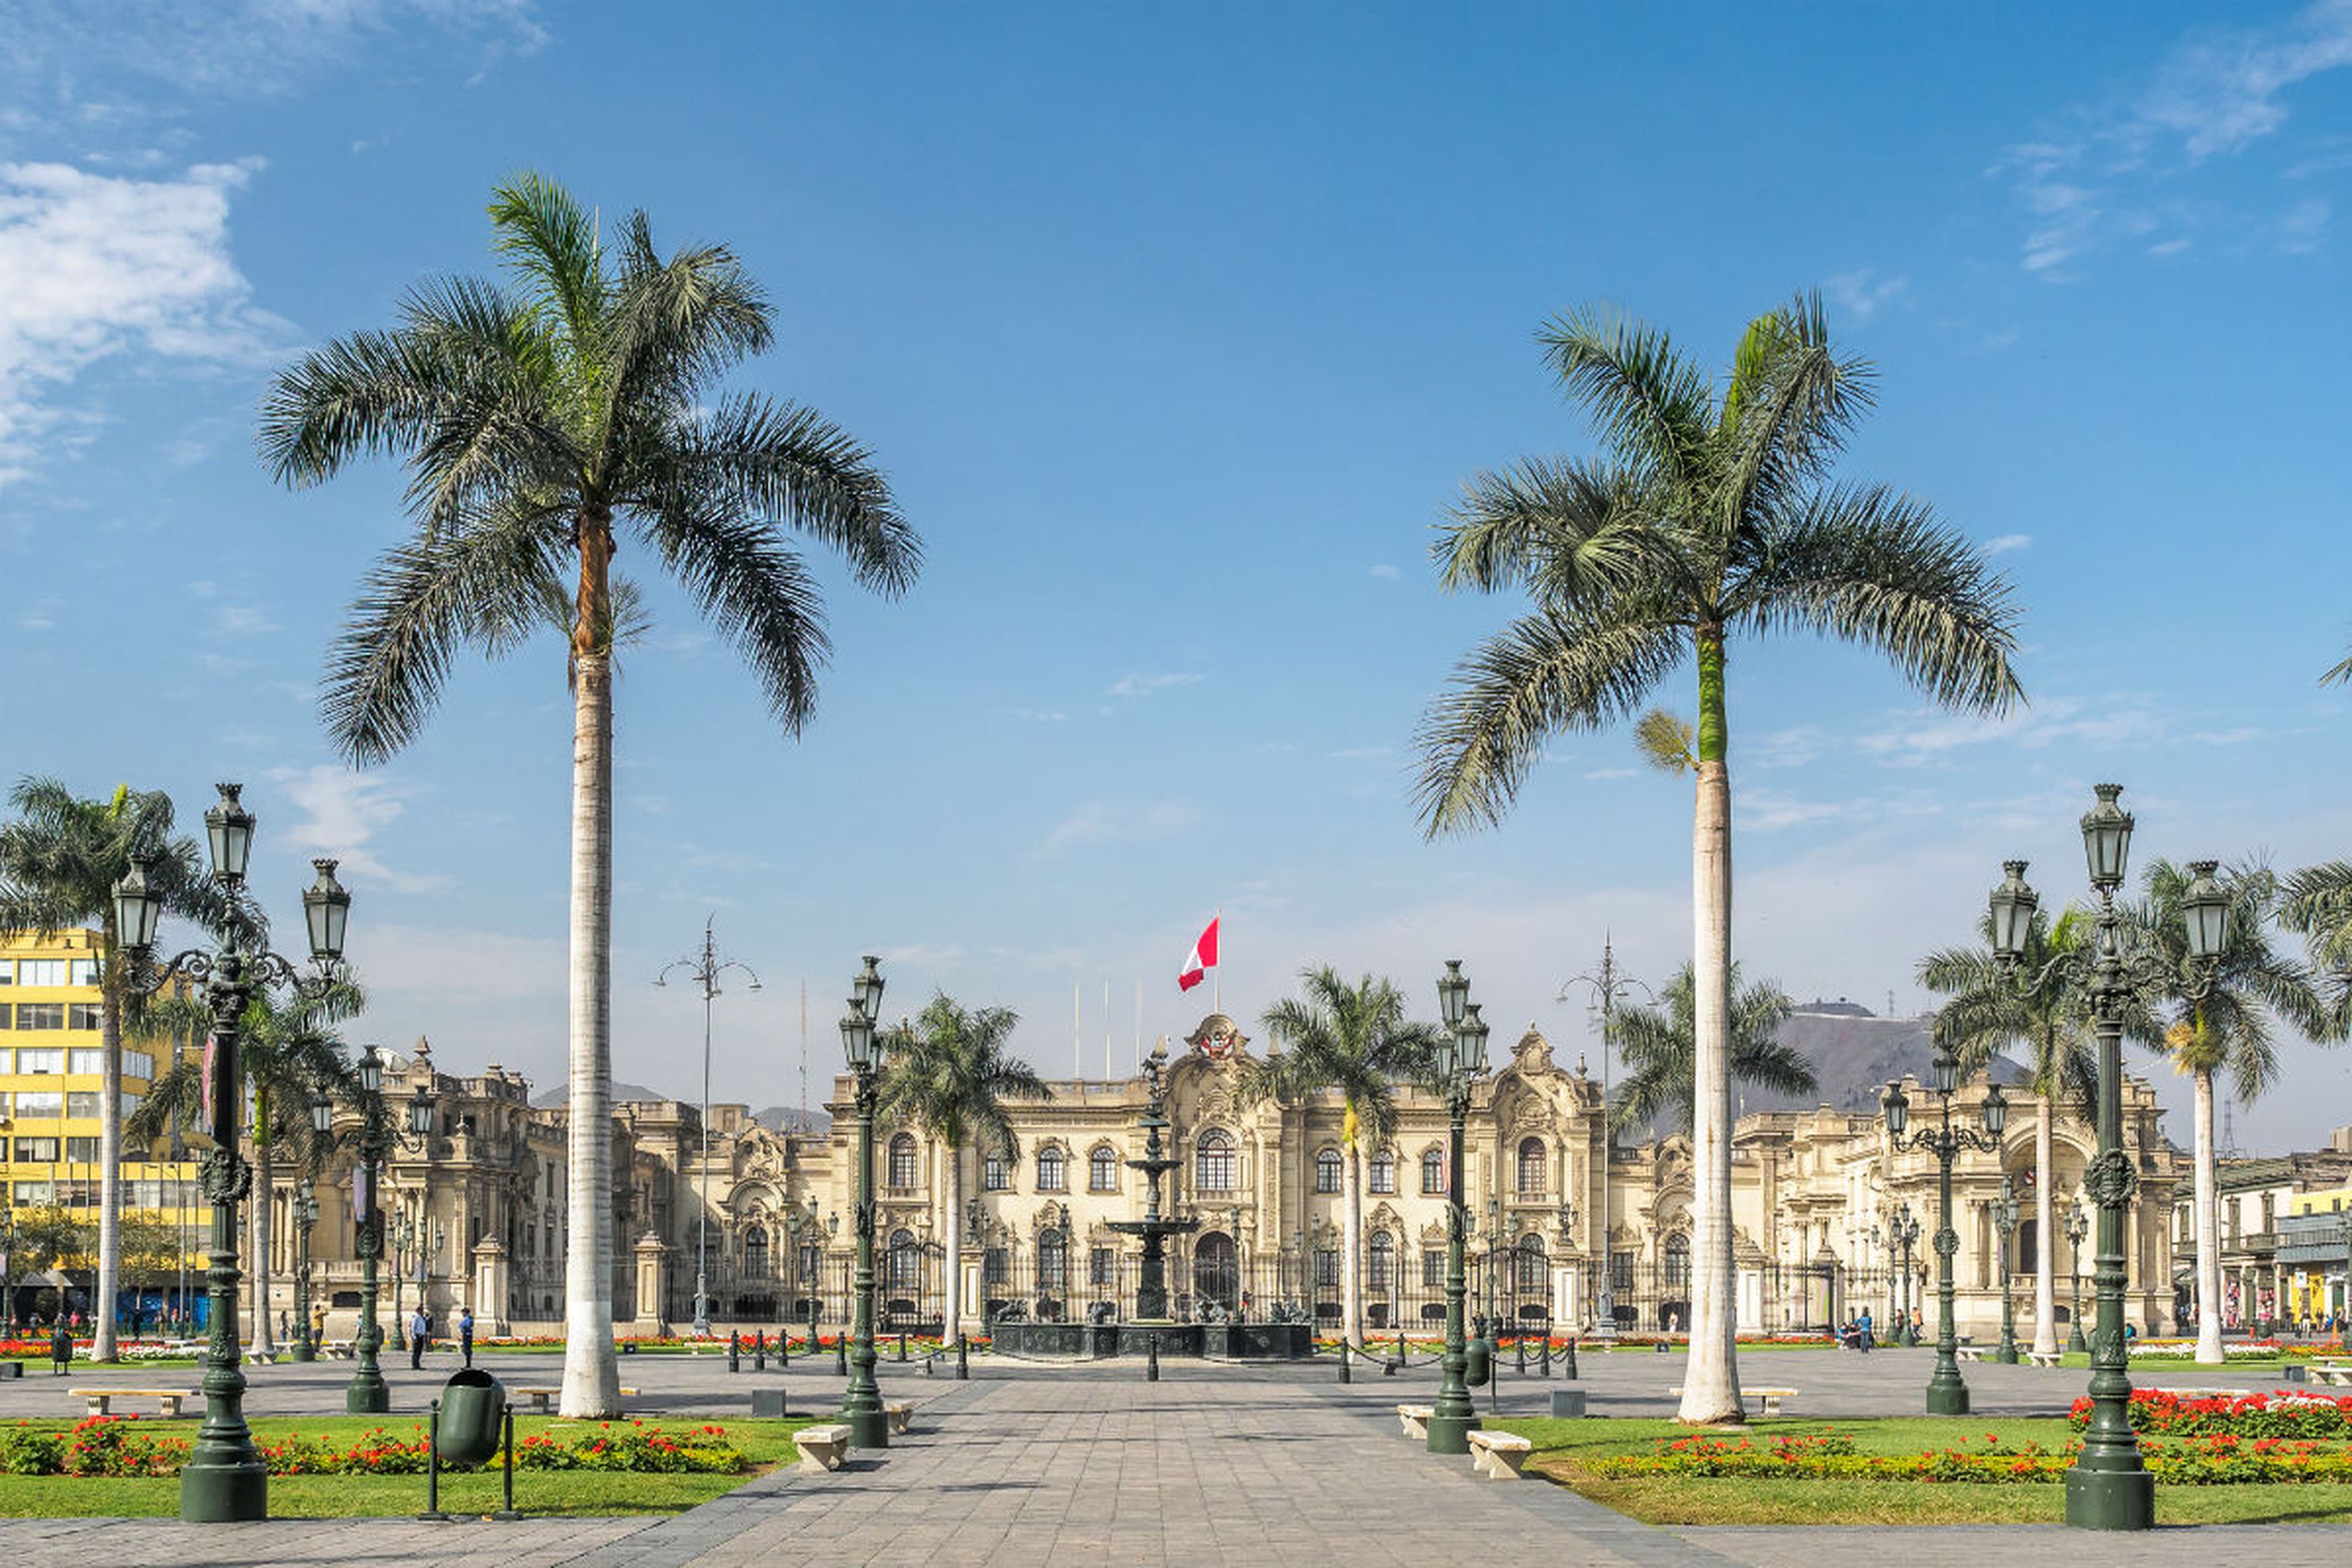 El Palacio de gobierno de Perú en la Plaza Mayor en la ciudad de Lima